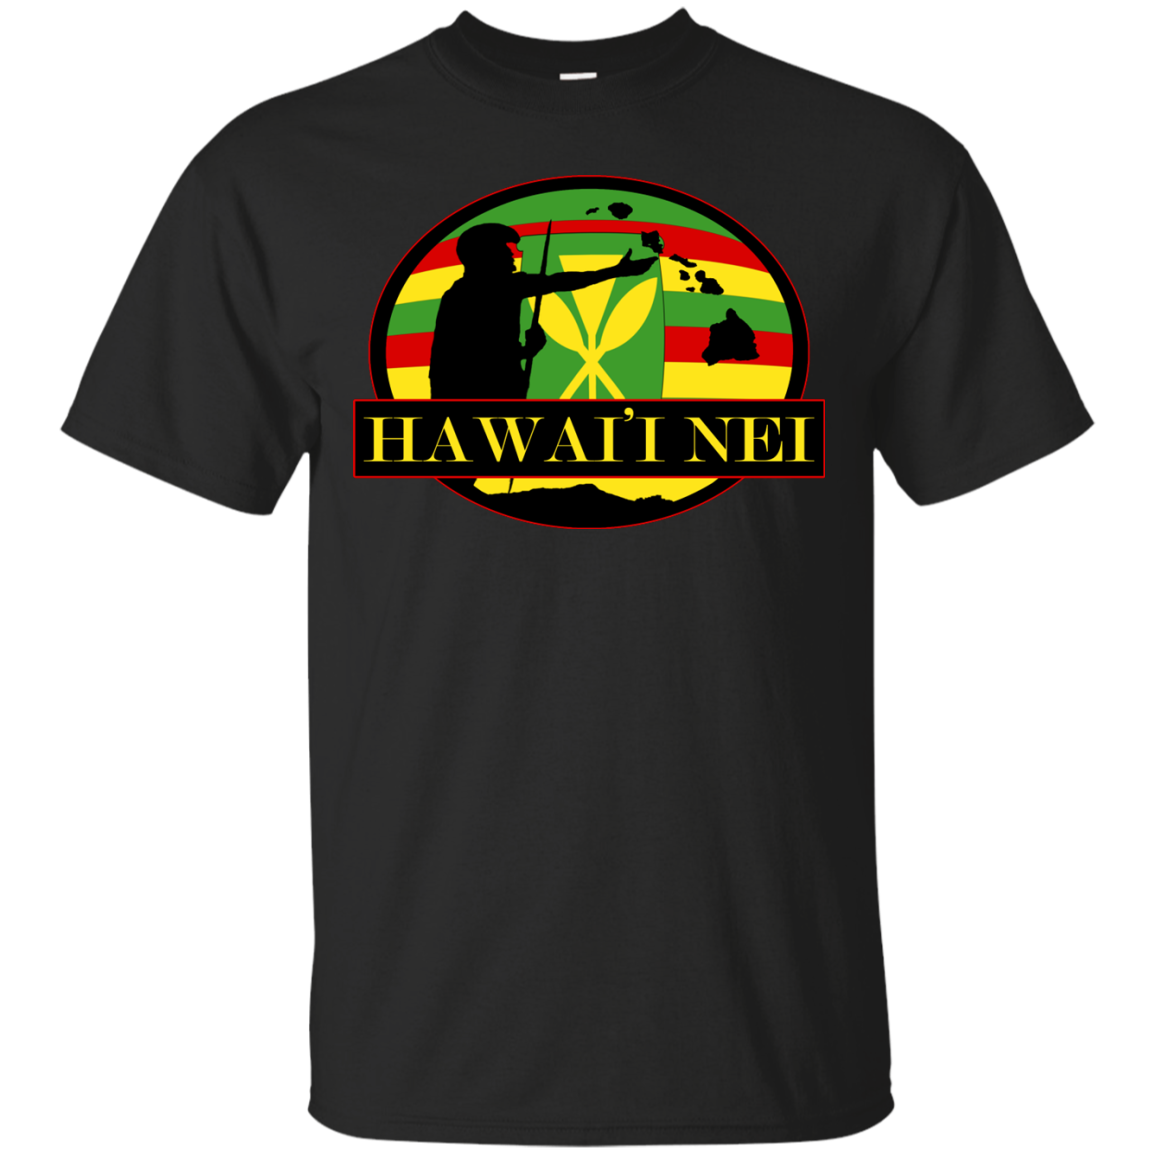 Hawai'i Nei Kanaka Maoli Custom Ultra Cotton T-Shirt - Hawaii Nei All Day